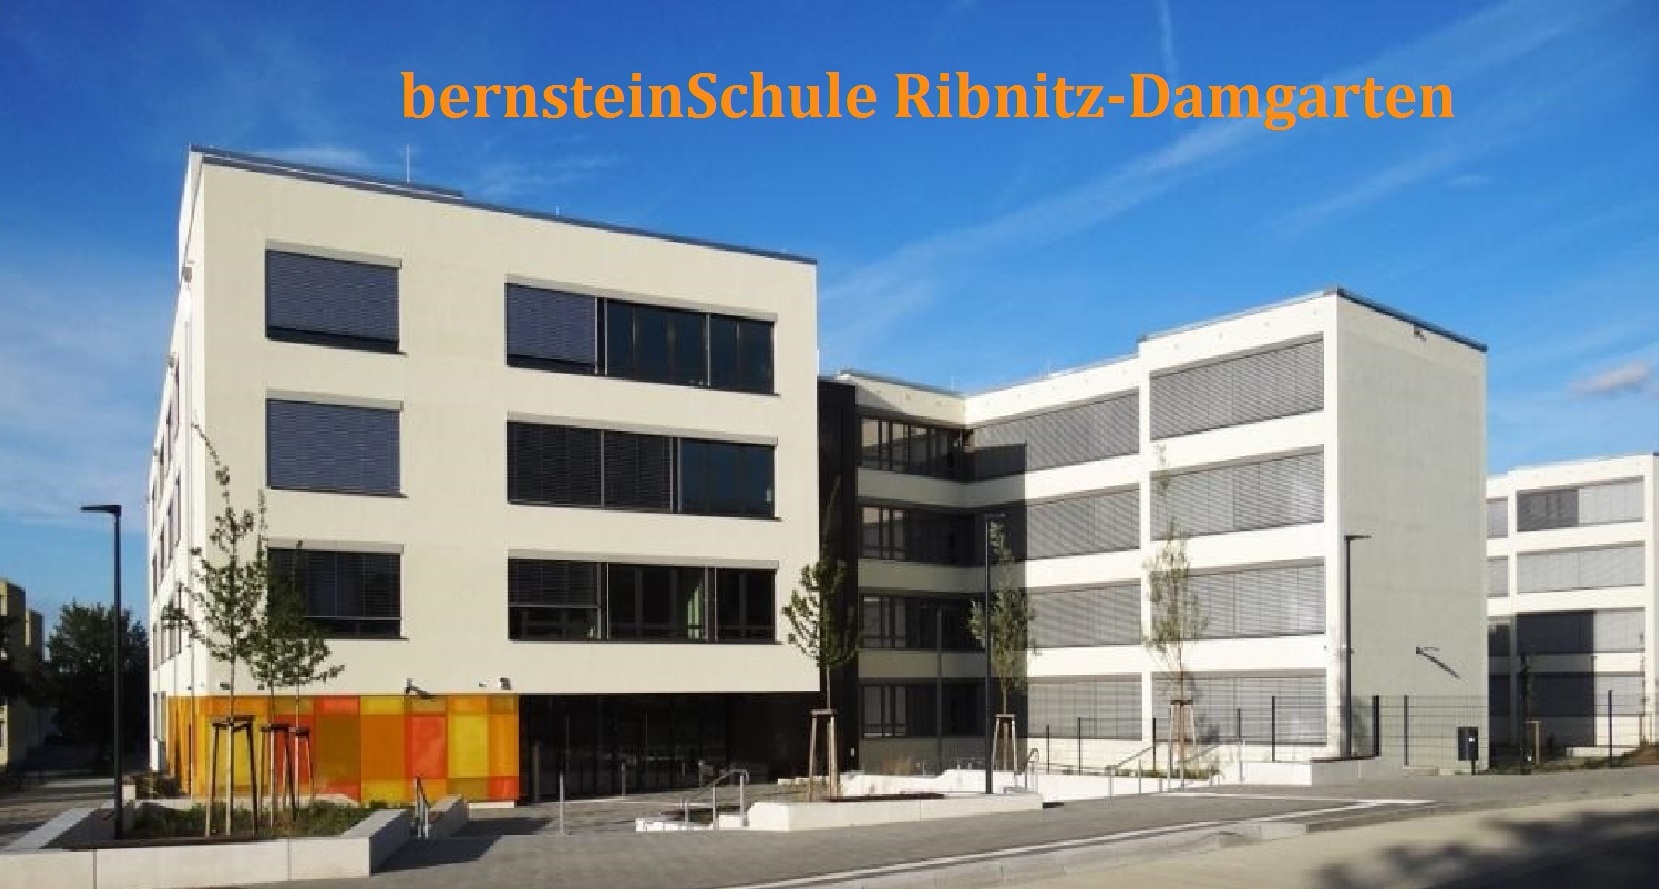 Feierliche Eröffnung des Neubaus der bernsteinSchule Ribnitz-Damgarten am 14. September 2023 - Fotos: Eckart Kreitlow